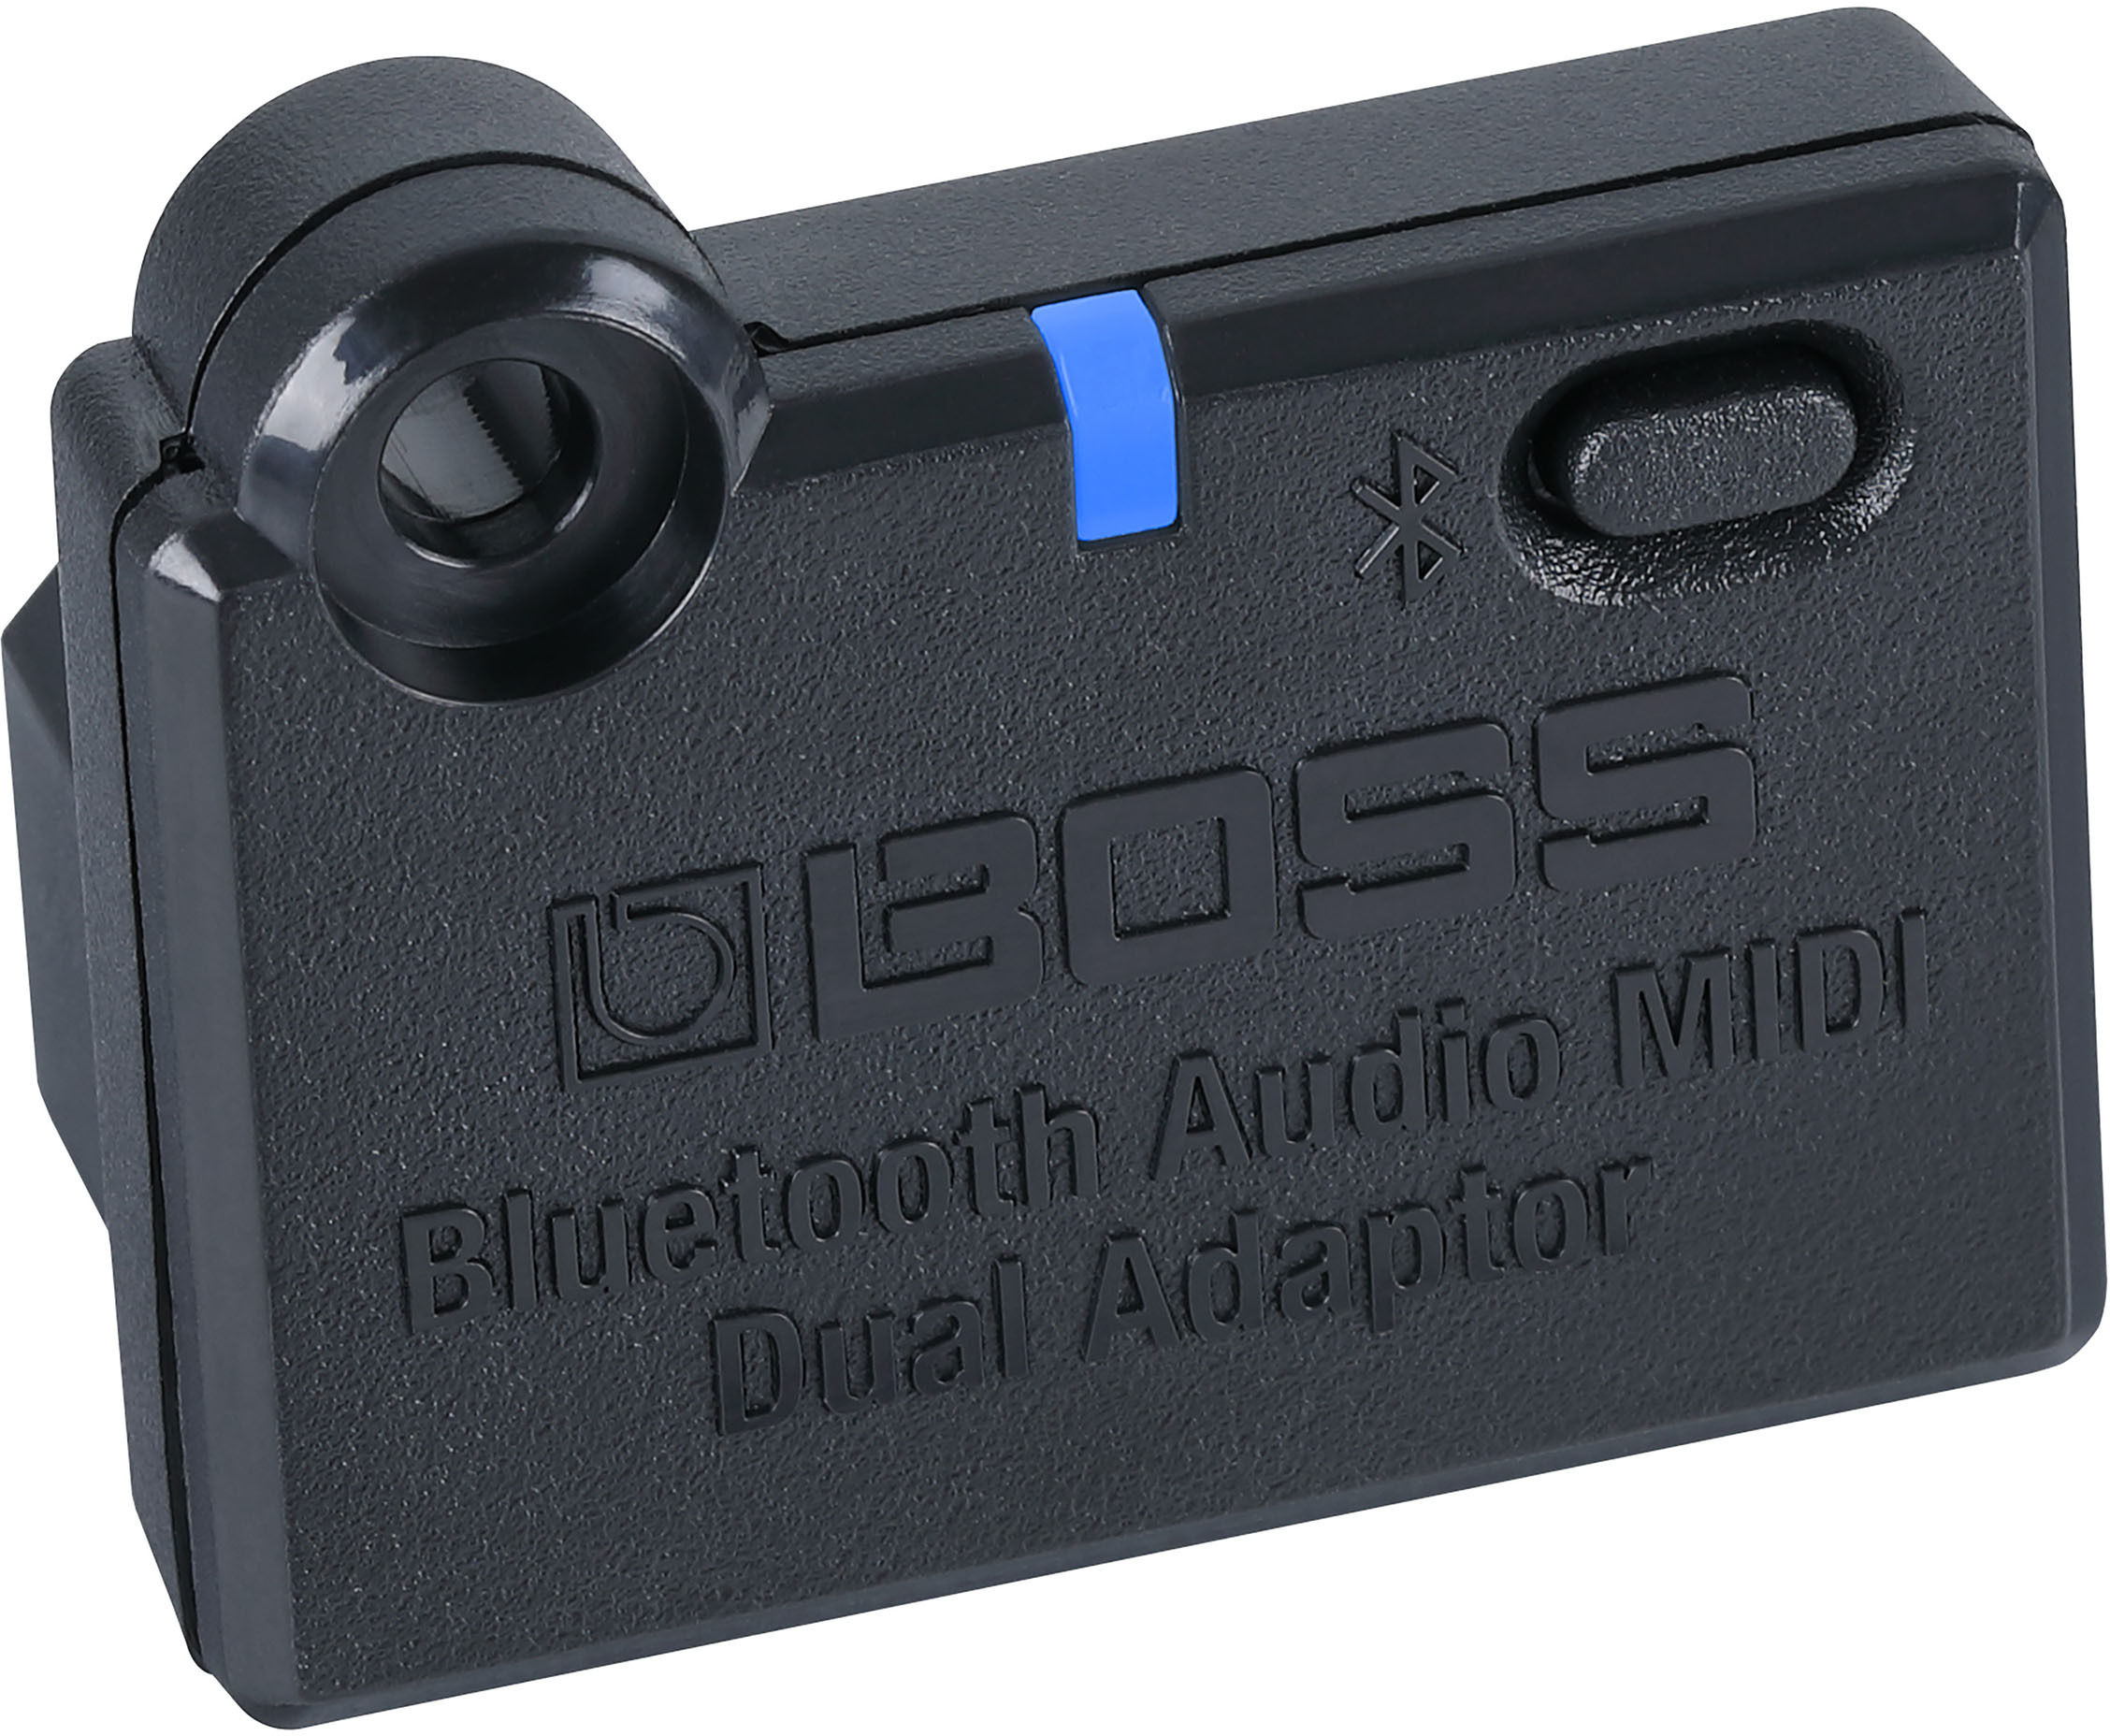 Boss Bluetooth Audio Adaptator - Zubehör für Effektgeräte - Main picture